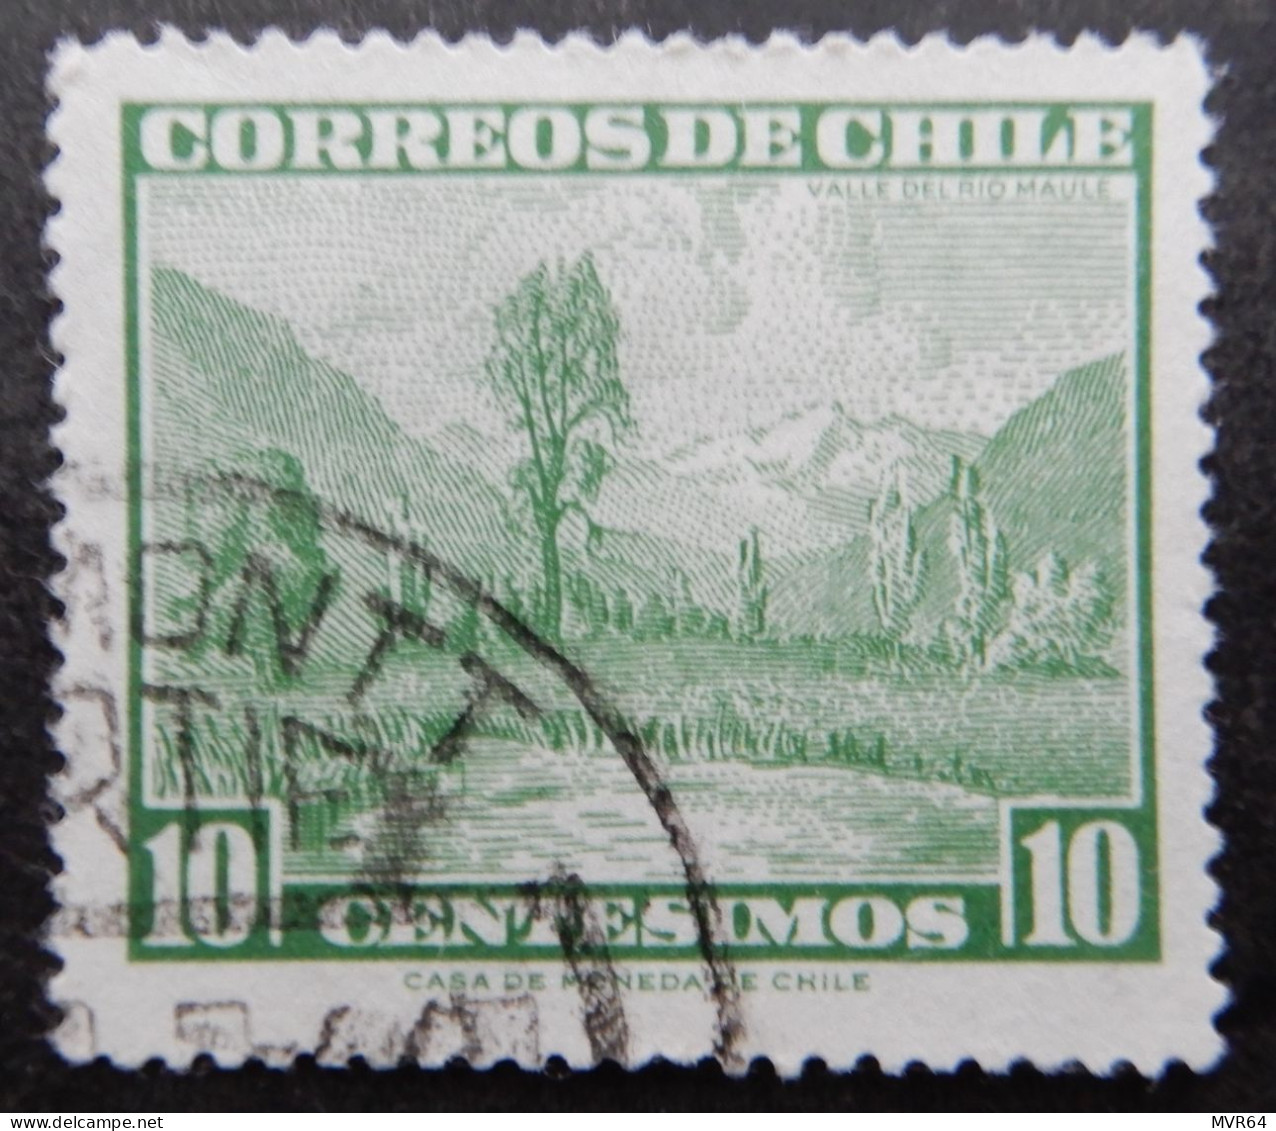 Chili Chile 1961 (1) Maule River Valley Valle Del Fiume Maule - Cile